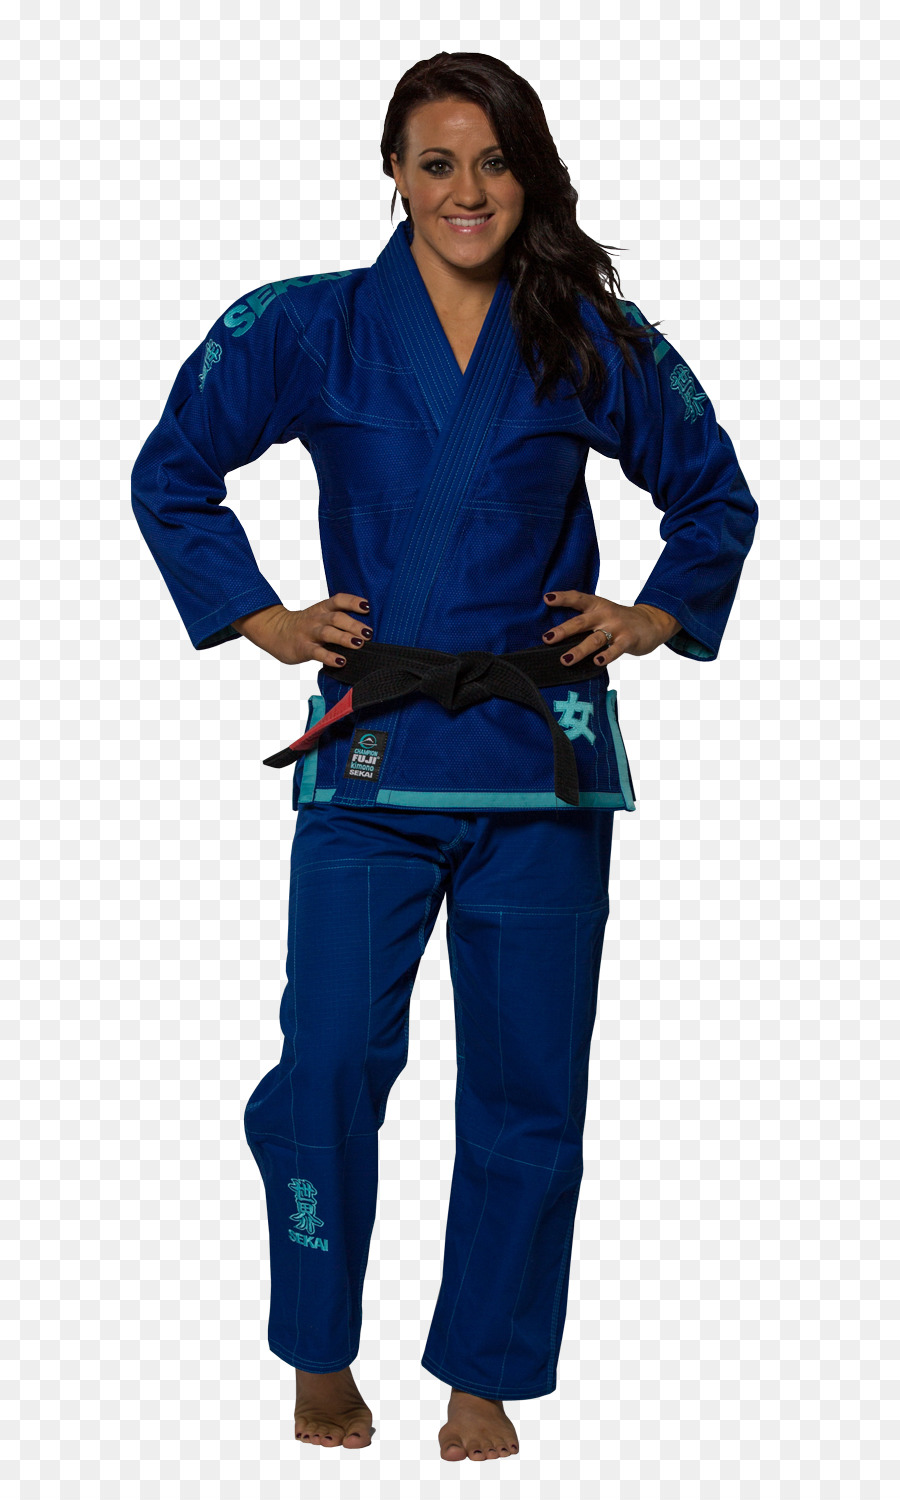 Brazilian jiu-jitsu gi Jujutsu Venum Kimono - fancy dress png download - 767*1500 - Free Transparent Brazilian Jiujitsu Gi png Download.